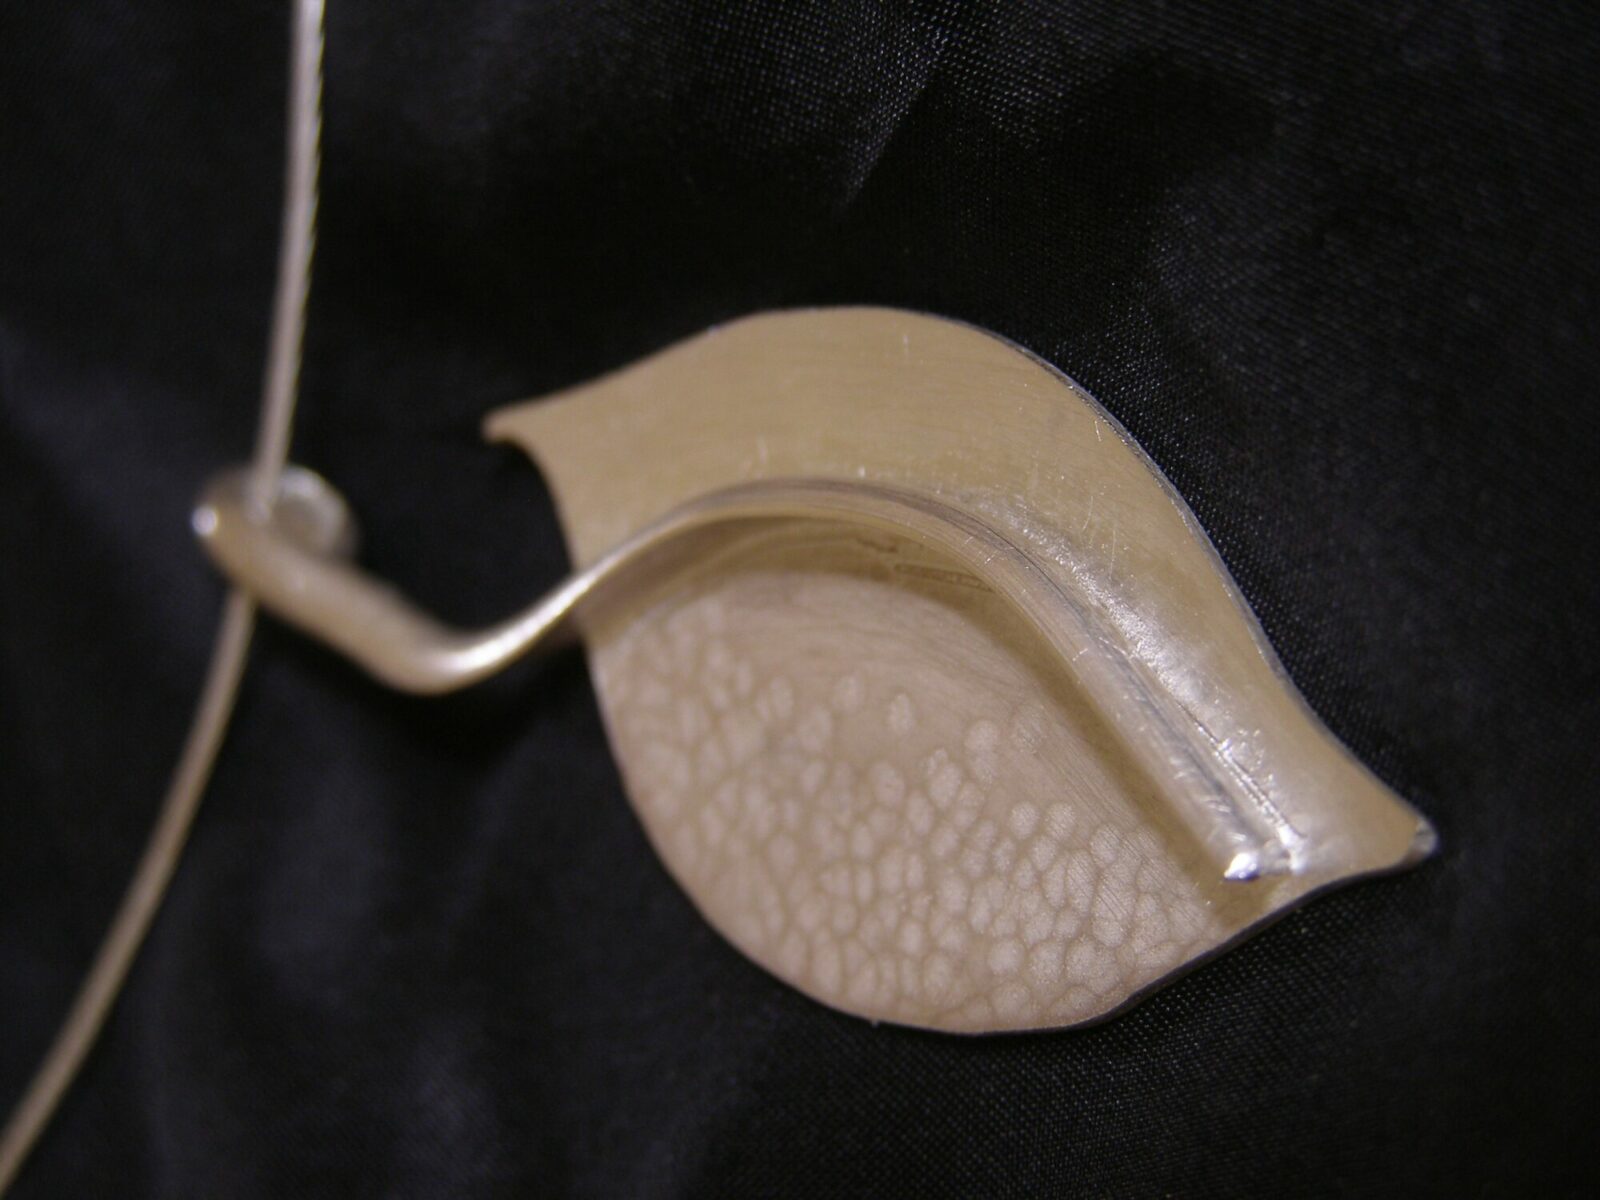 leaf necklace